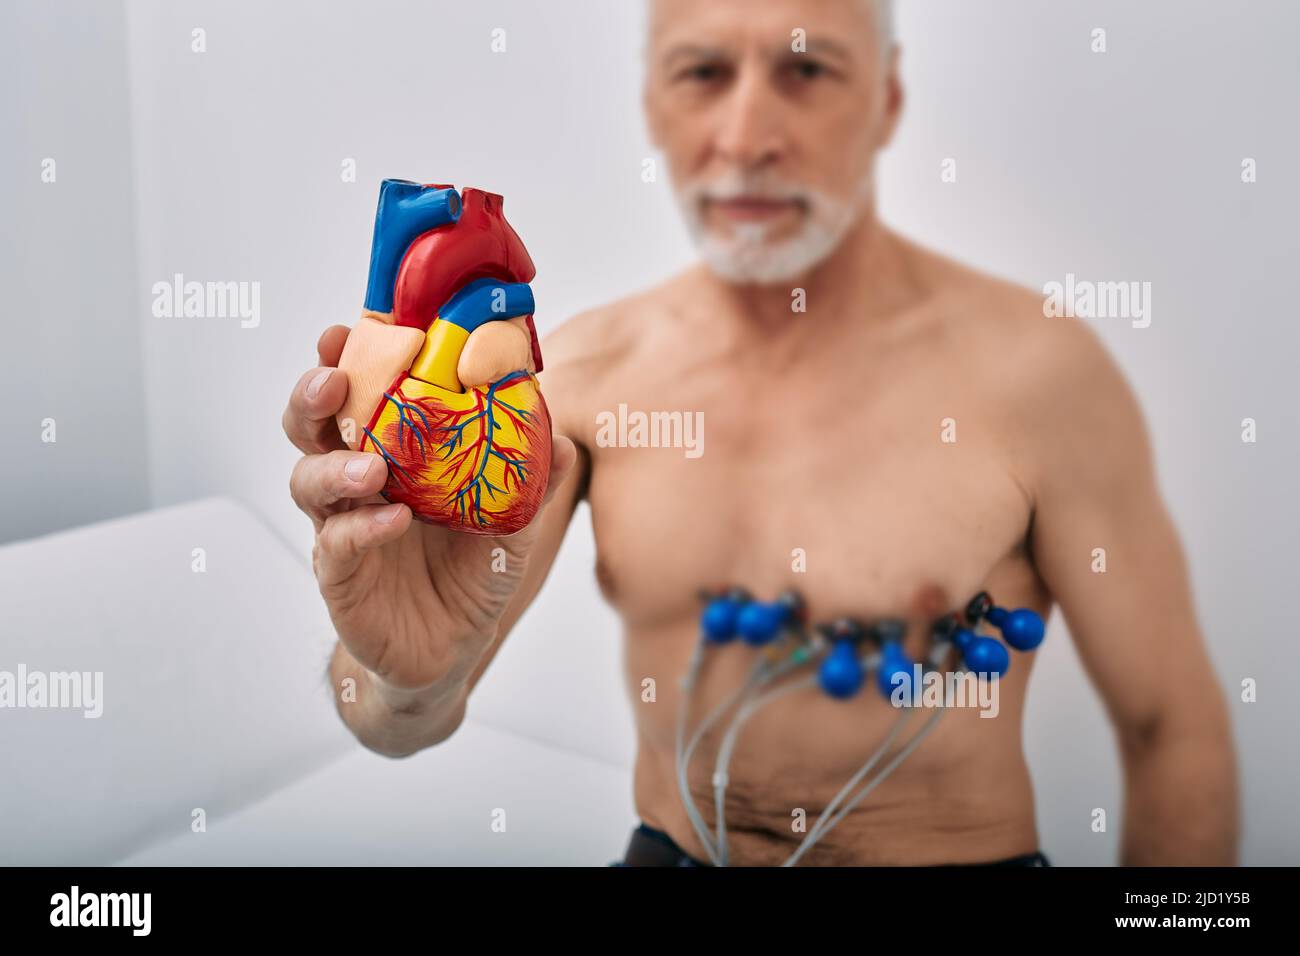 Concepto de salud cardiaca, pruebas cardiacas, cardiograma. Hombre mayor durante la prueba cardíaca con sensores, mantiene el modelo anatómico del corazón humano en la mano delante de Foto de stock